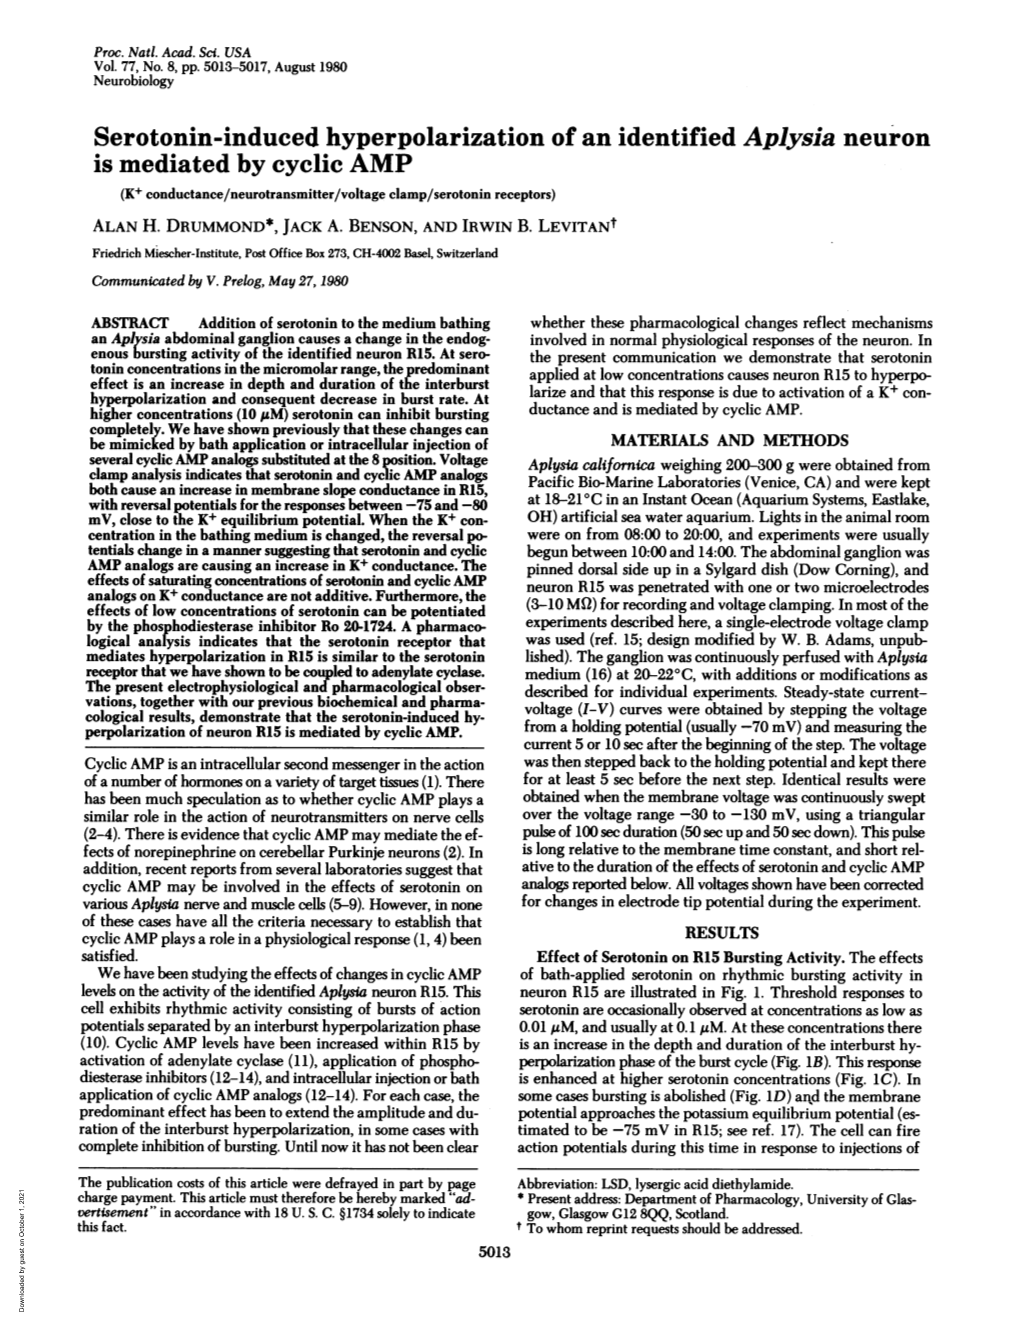 Serotonin-Induced Hyperpolarization of an Identified Aplysia Neuron